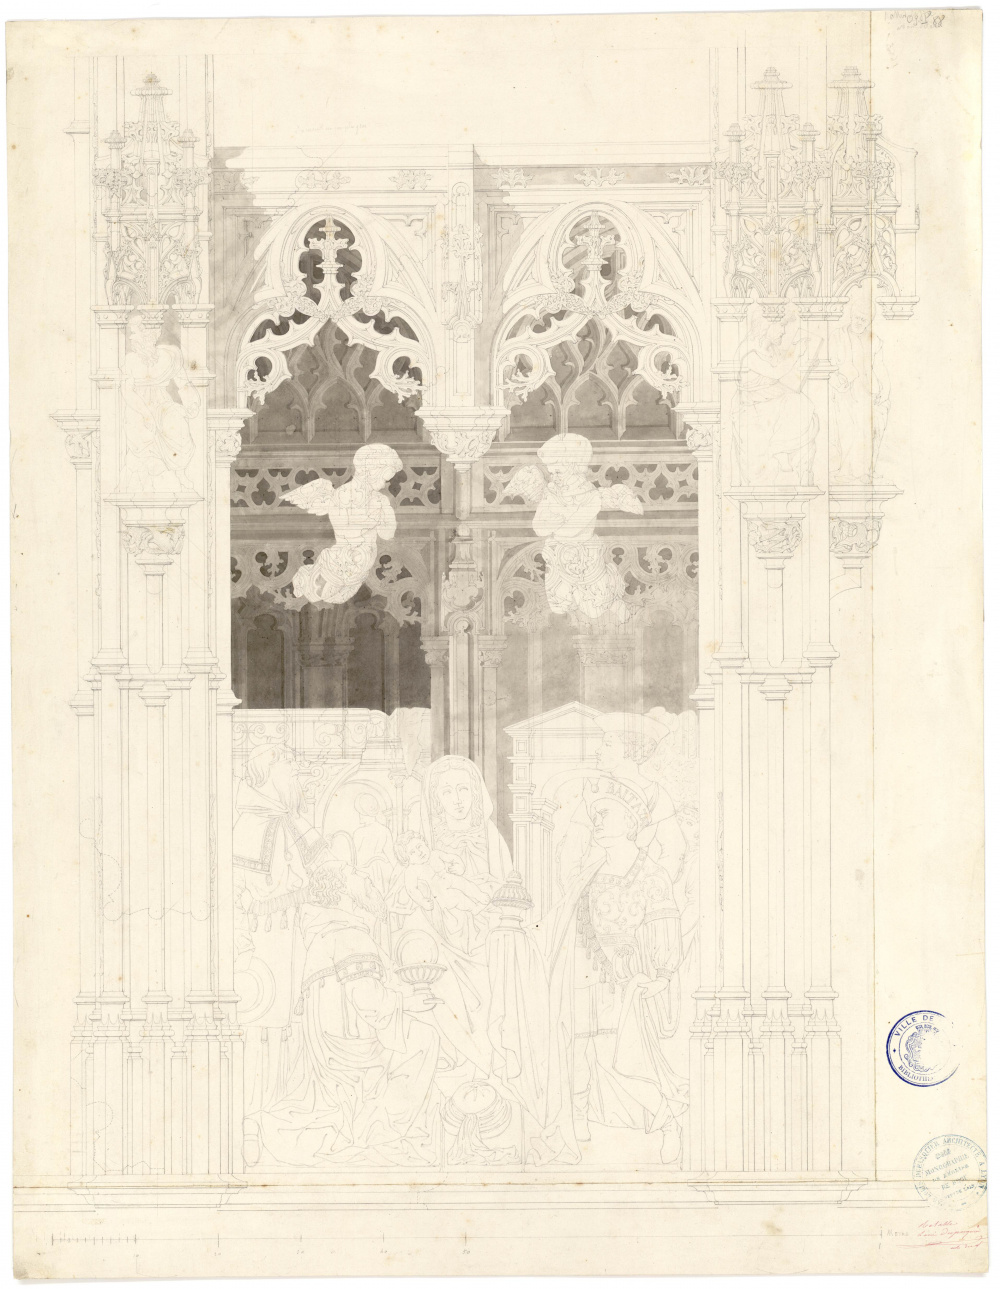 Retable de la Vierge dans l'église de Brou, [1825-1855]. Médiathèque Élisabeth et Roger Vailland de Bourg-en-Bresse.